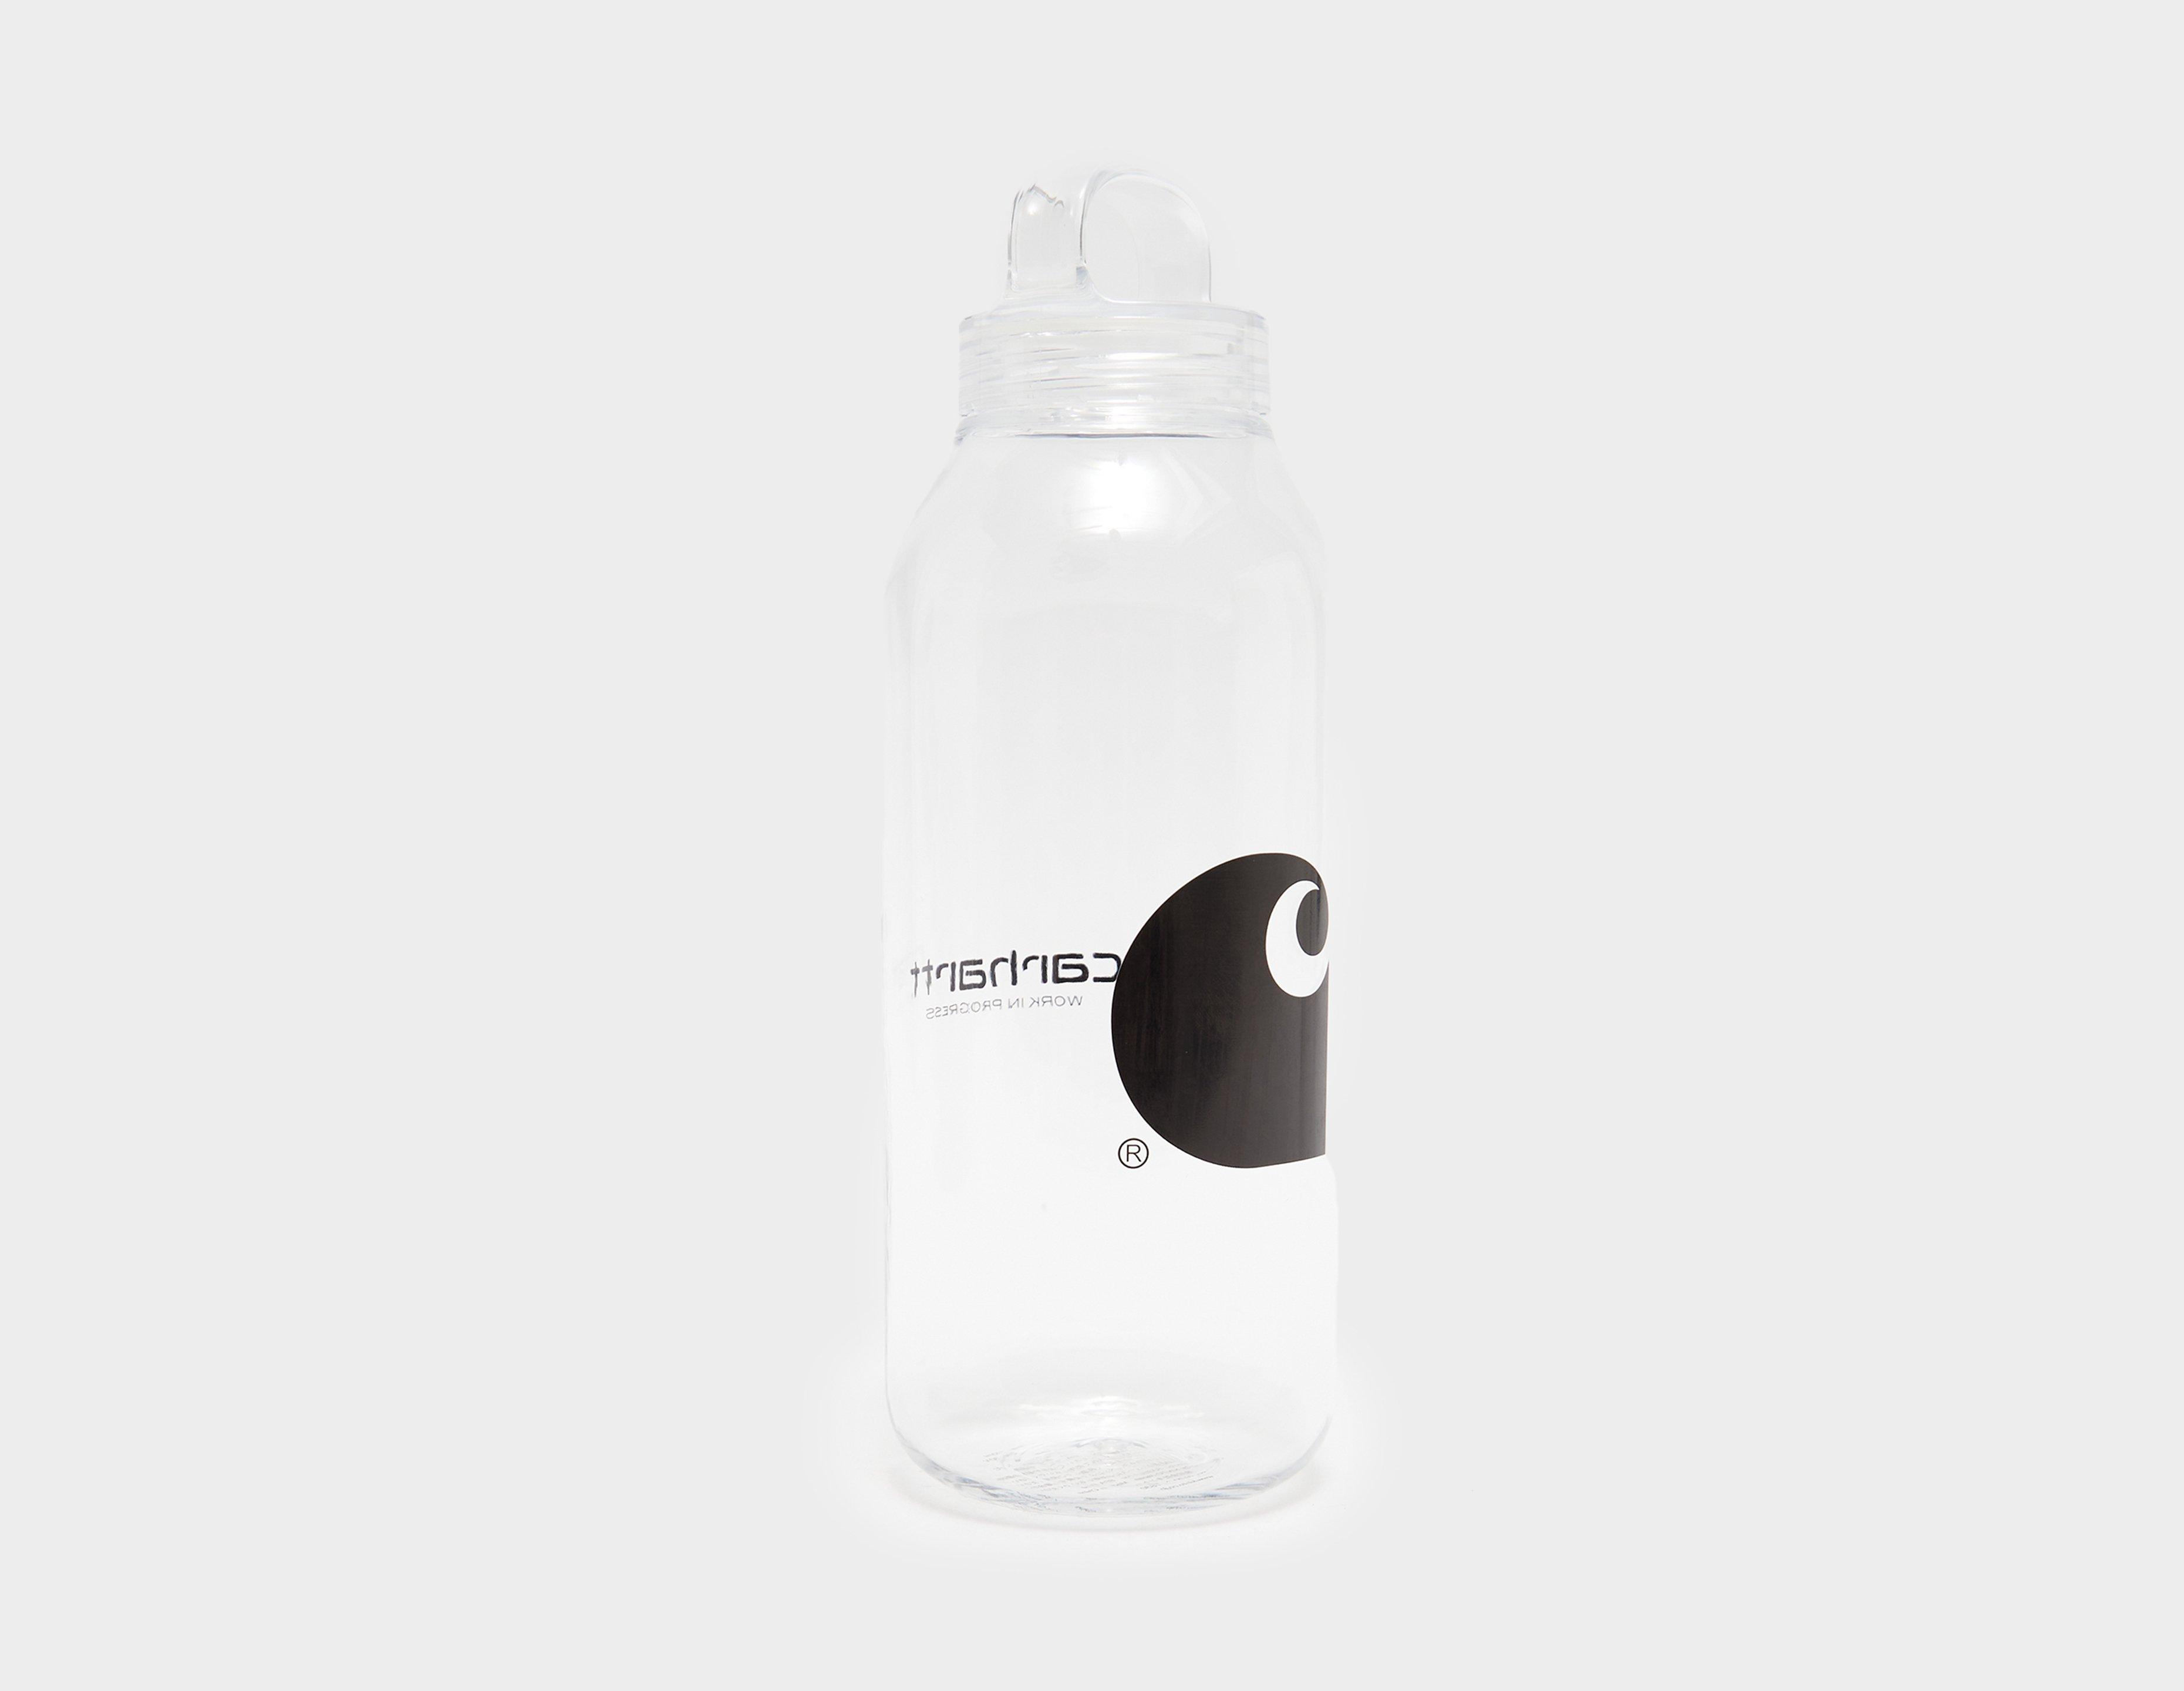 White Carhartt WIP x Kinto Water Bottle